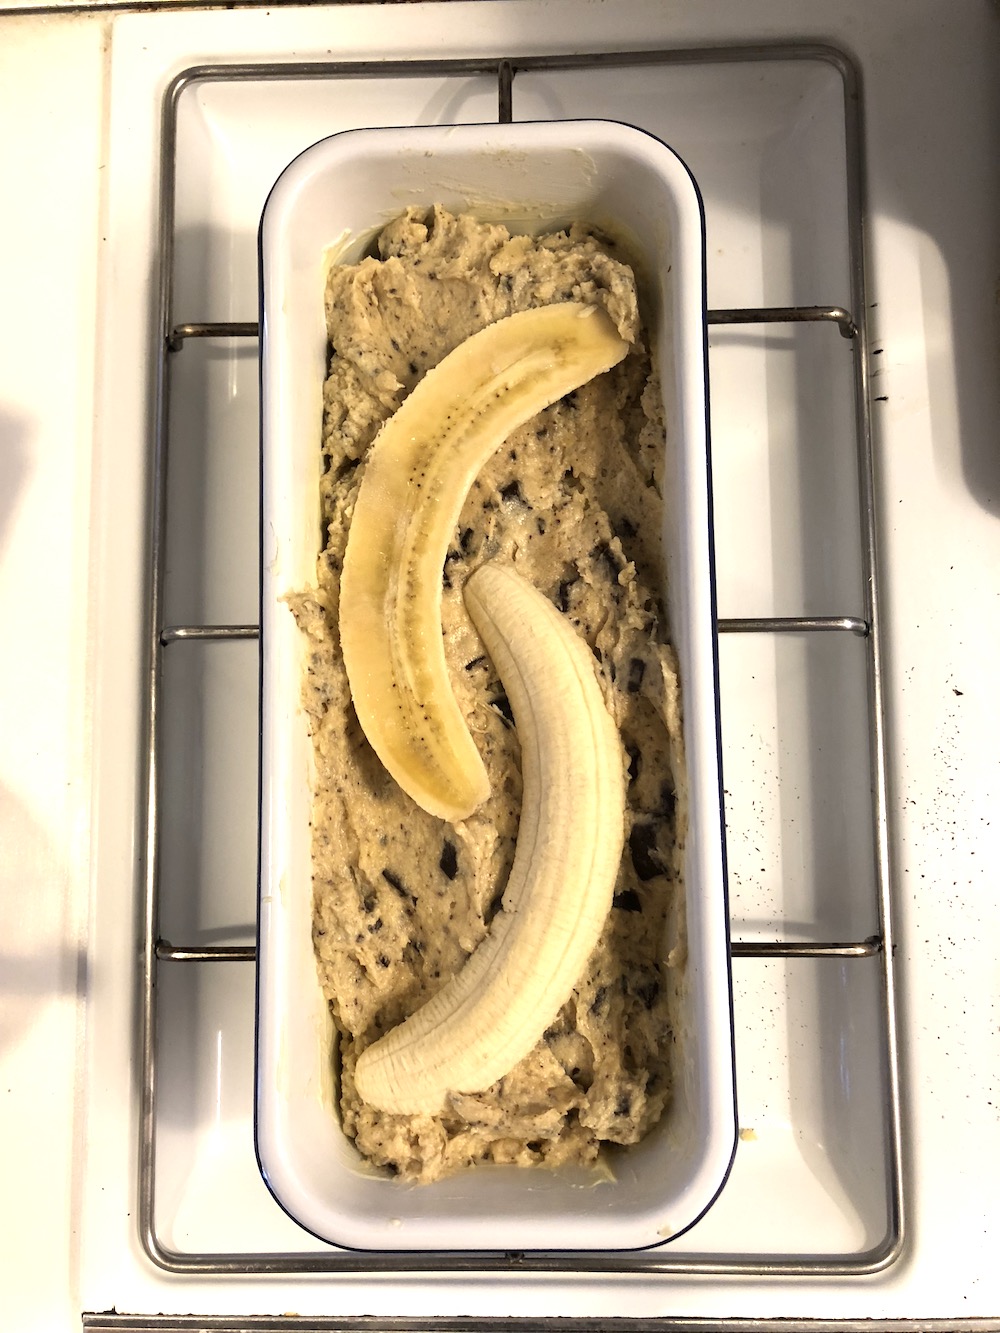 Prioritäten first - Umbau Second - leckerer Stracciatella-Bananen Kuchen